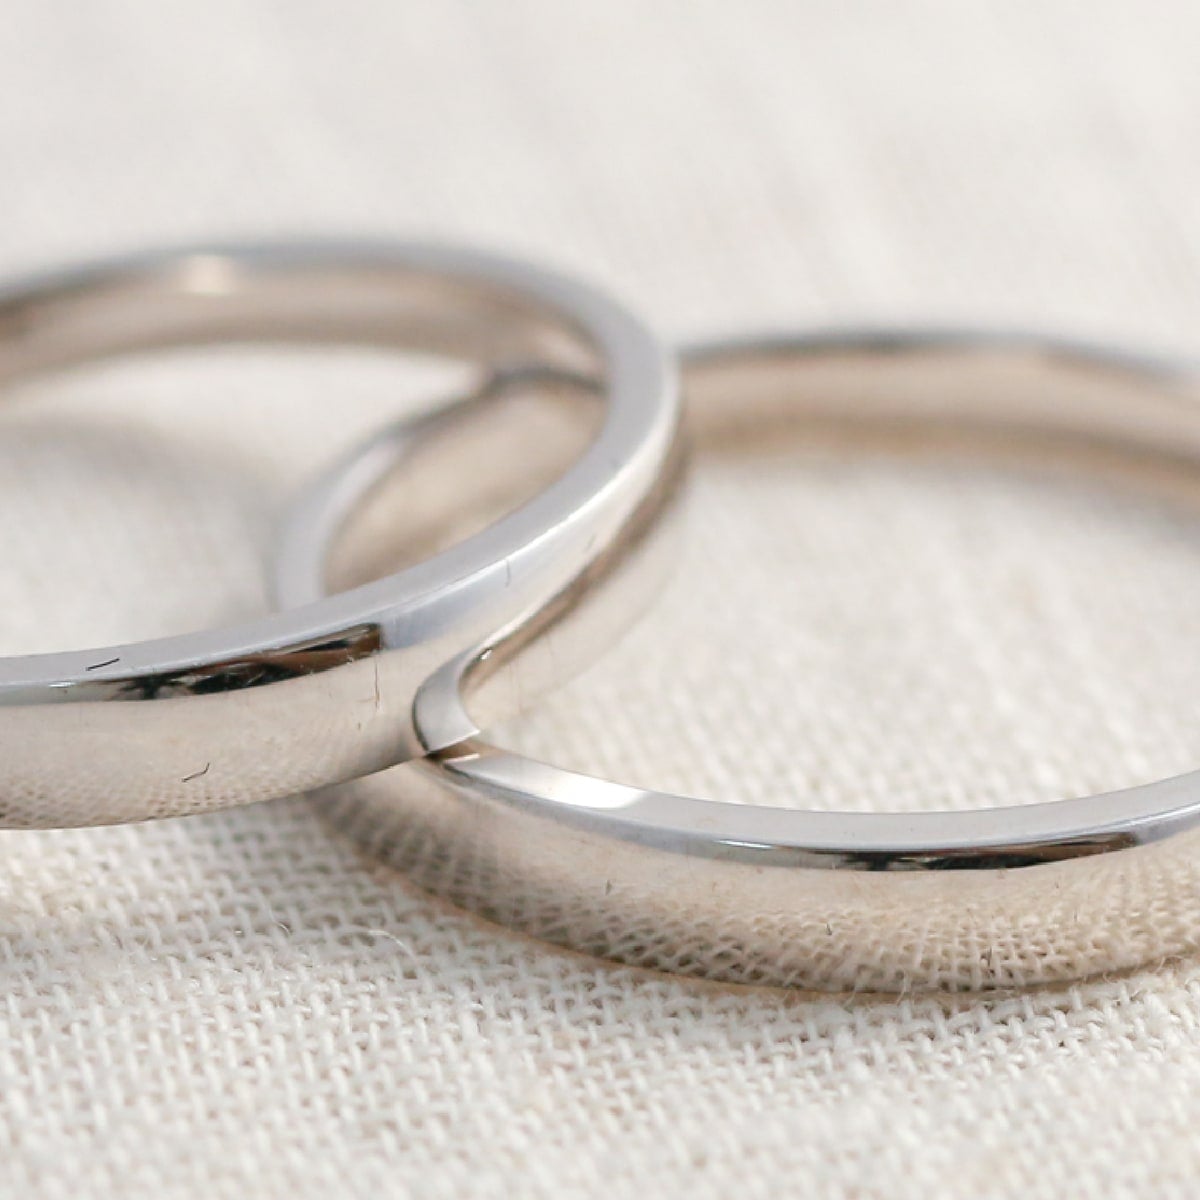 結婚指輪 2本セット | mr964mr964